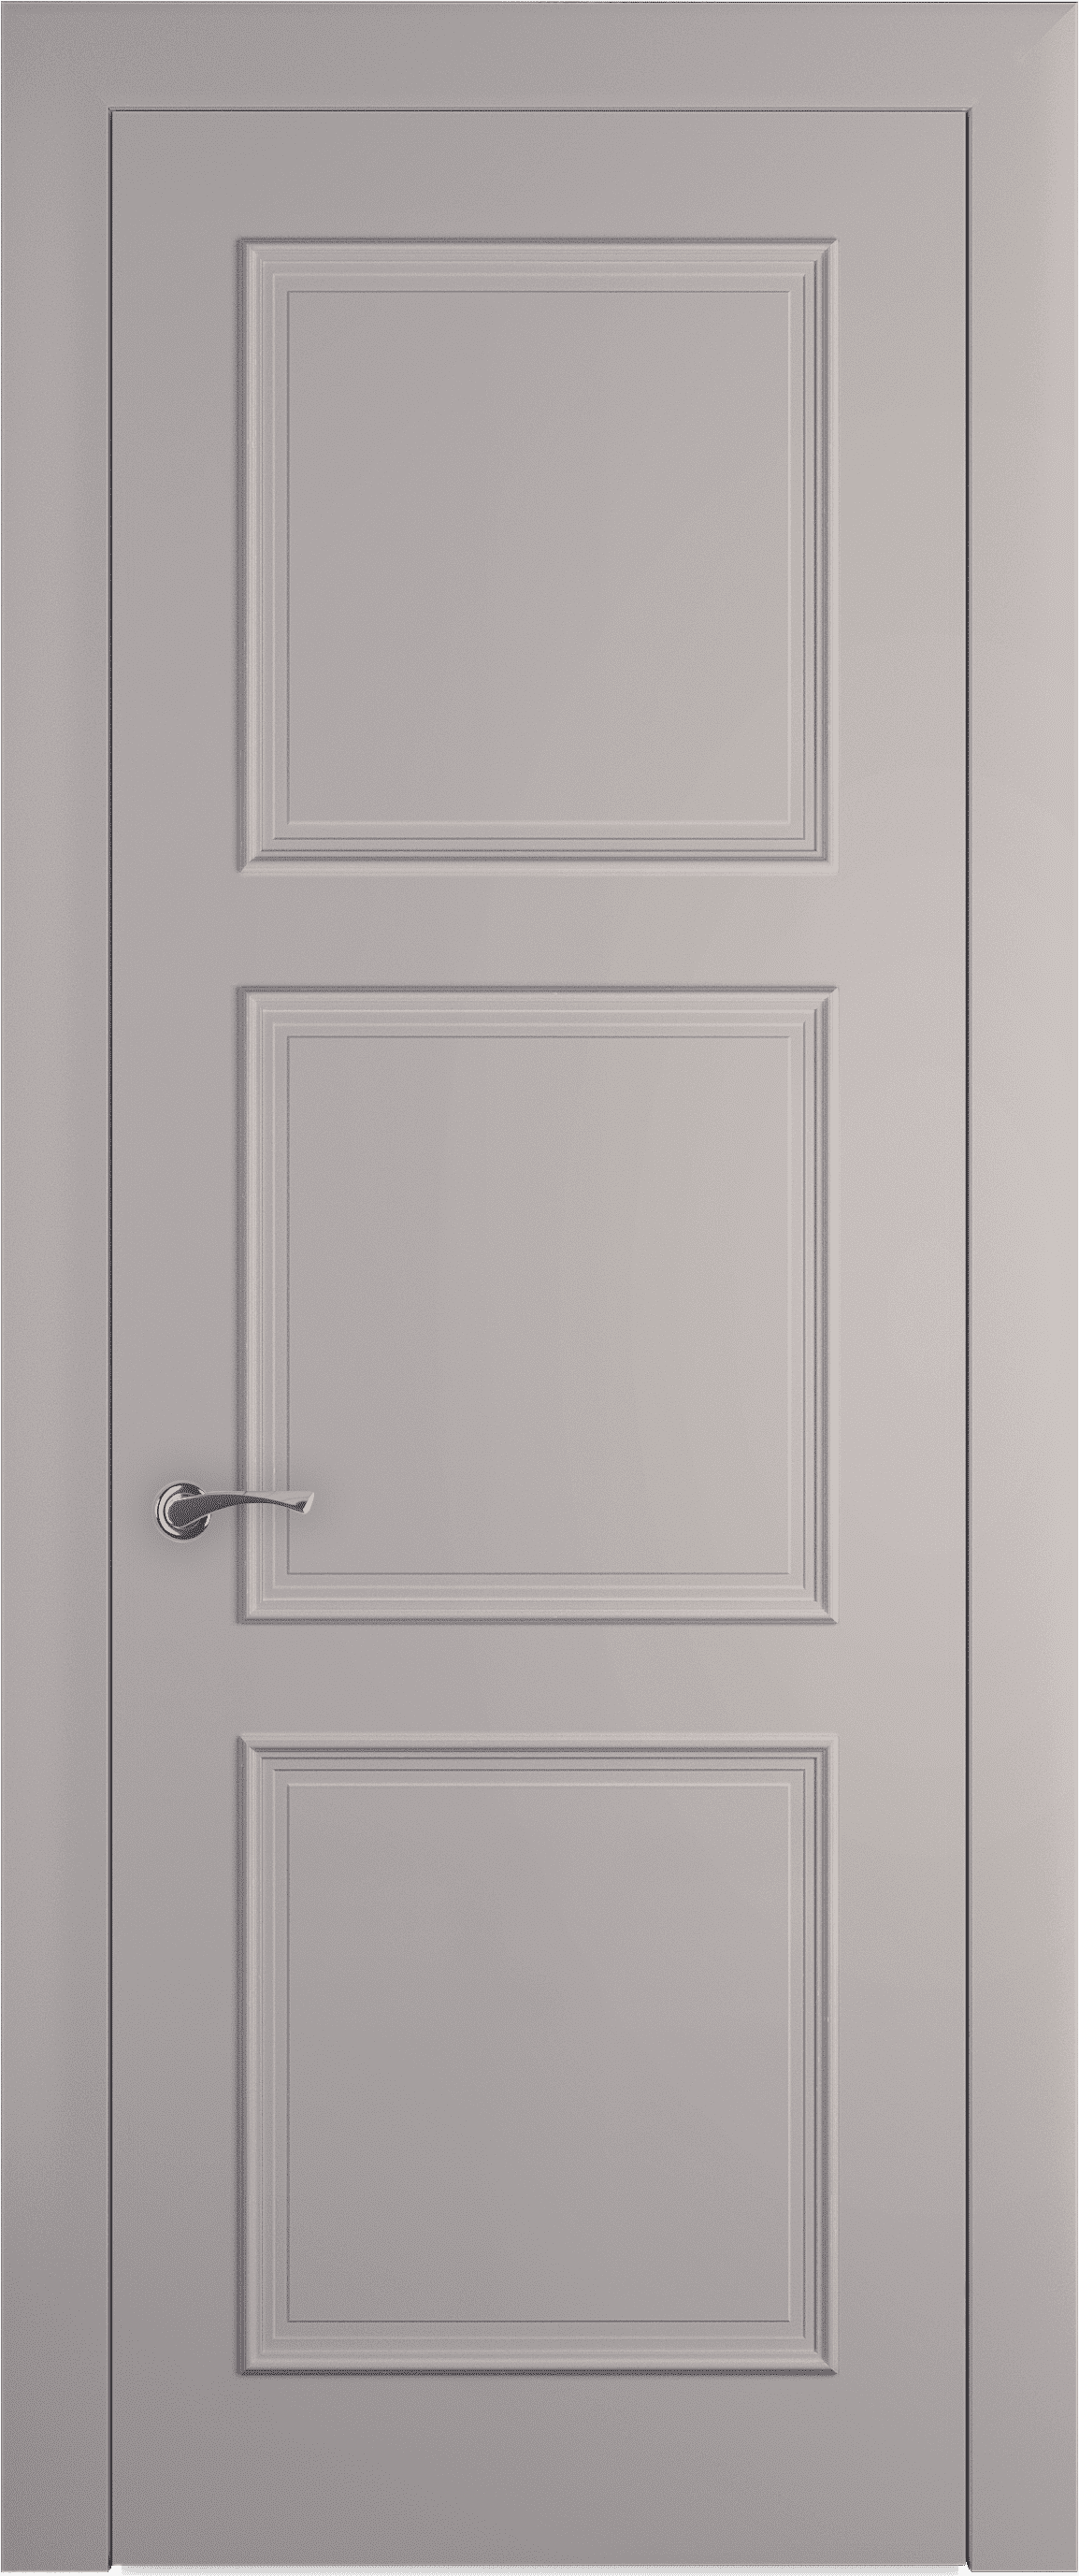 Межкомнатная дверь Трио багет 9